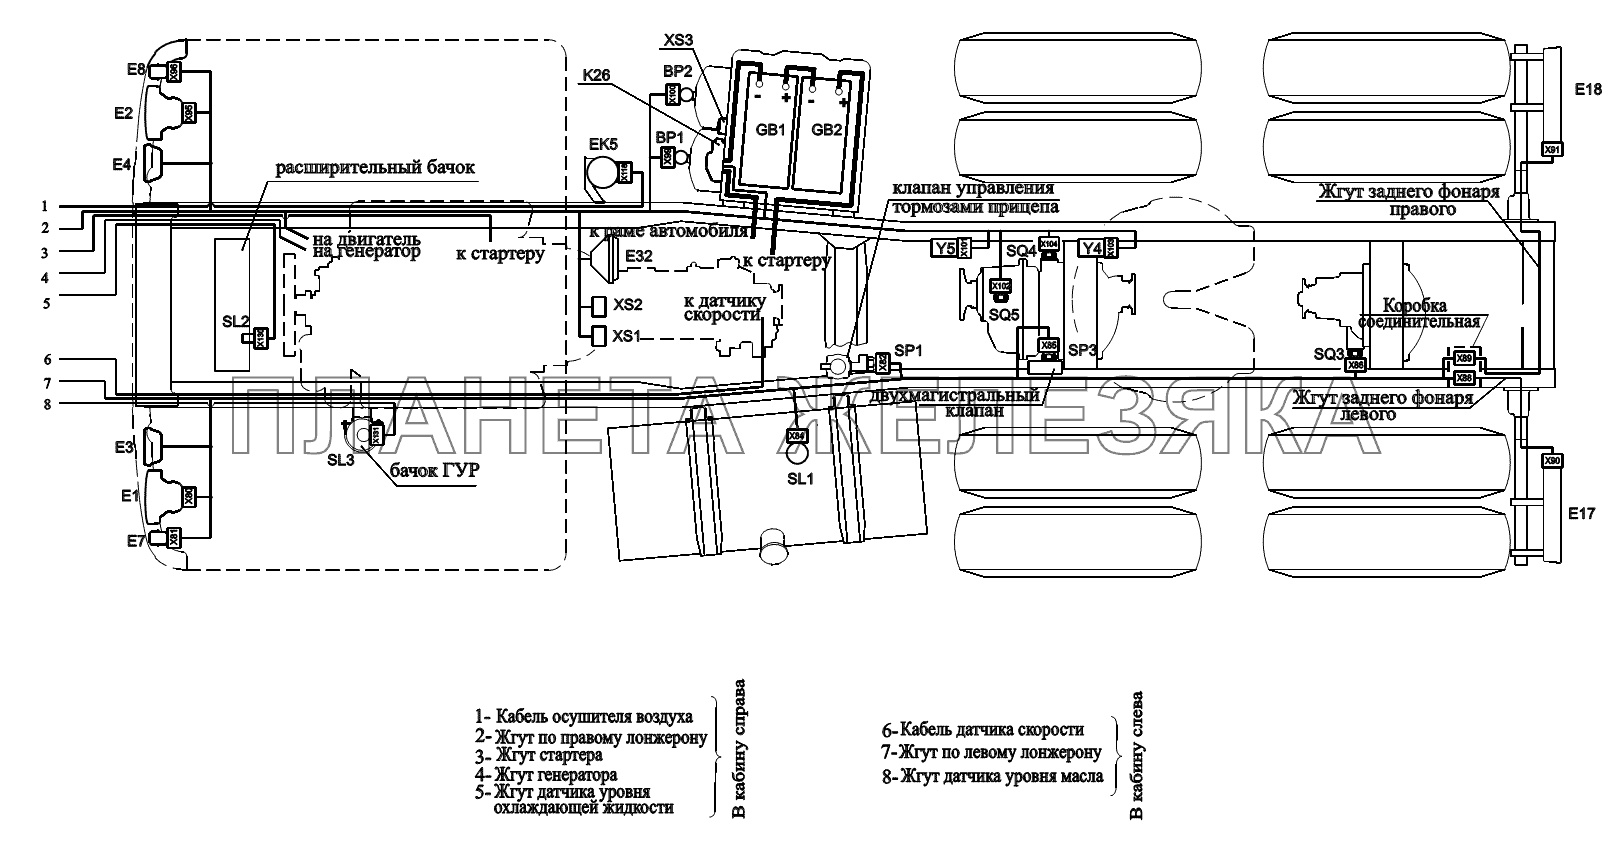 Расположение разъемов и элементов электрооборудования на шасси автомобилей(без автомобилей) МАЗ-6422, 5432